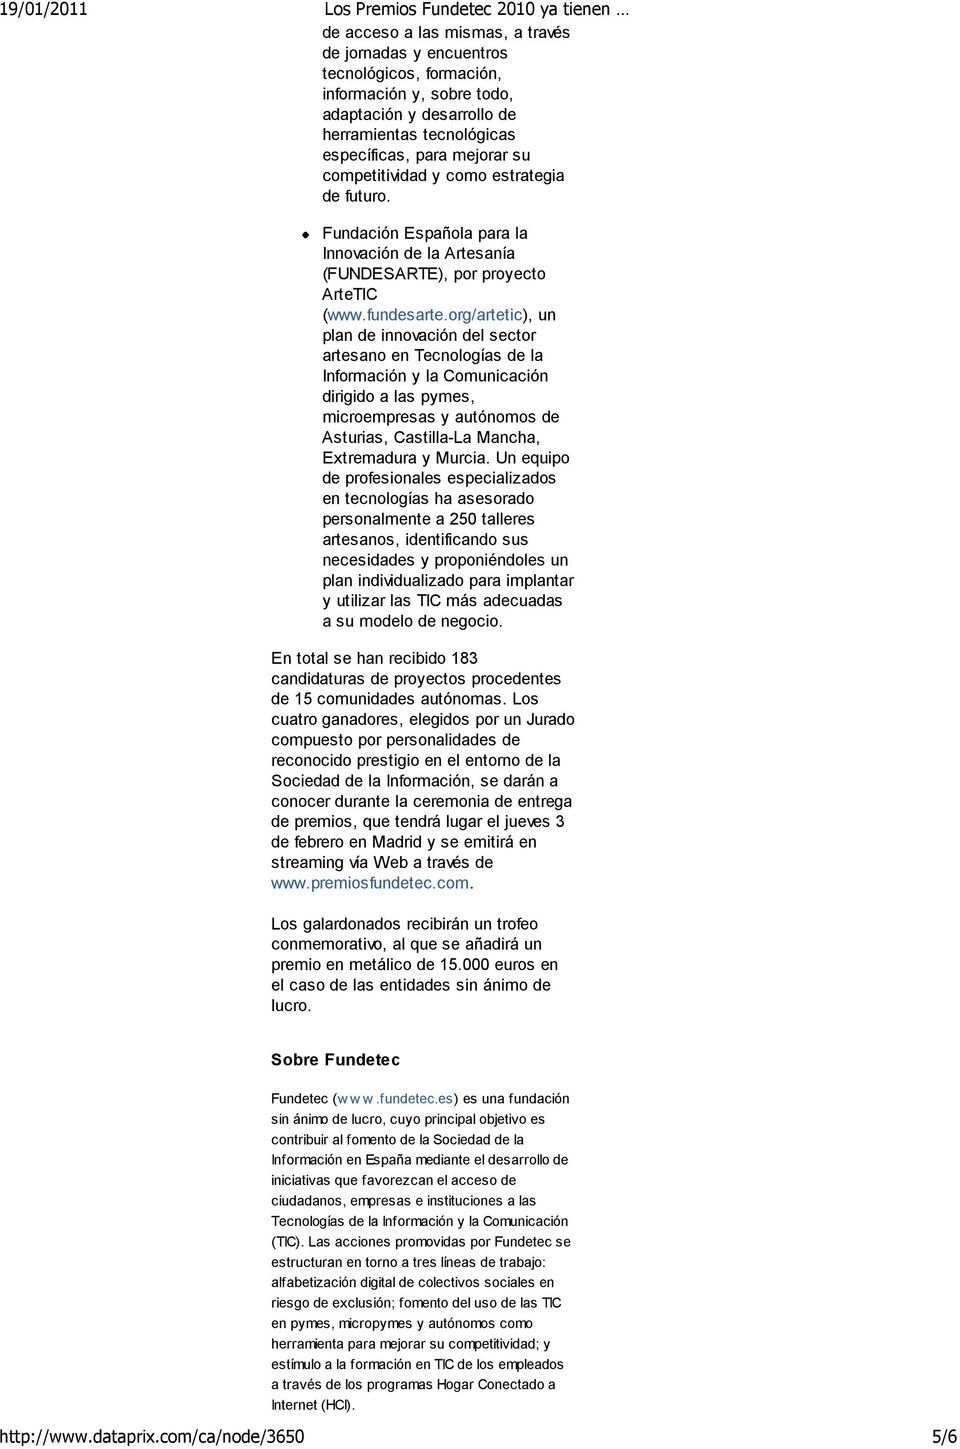 org/artetic), un plan de innovación del sector artesano en Tecnologías de la Información y la Comunicación dirigido a las pymes, microempresas y autónomos de Asturias, Castilla-La Mancha, Extremadura